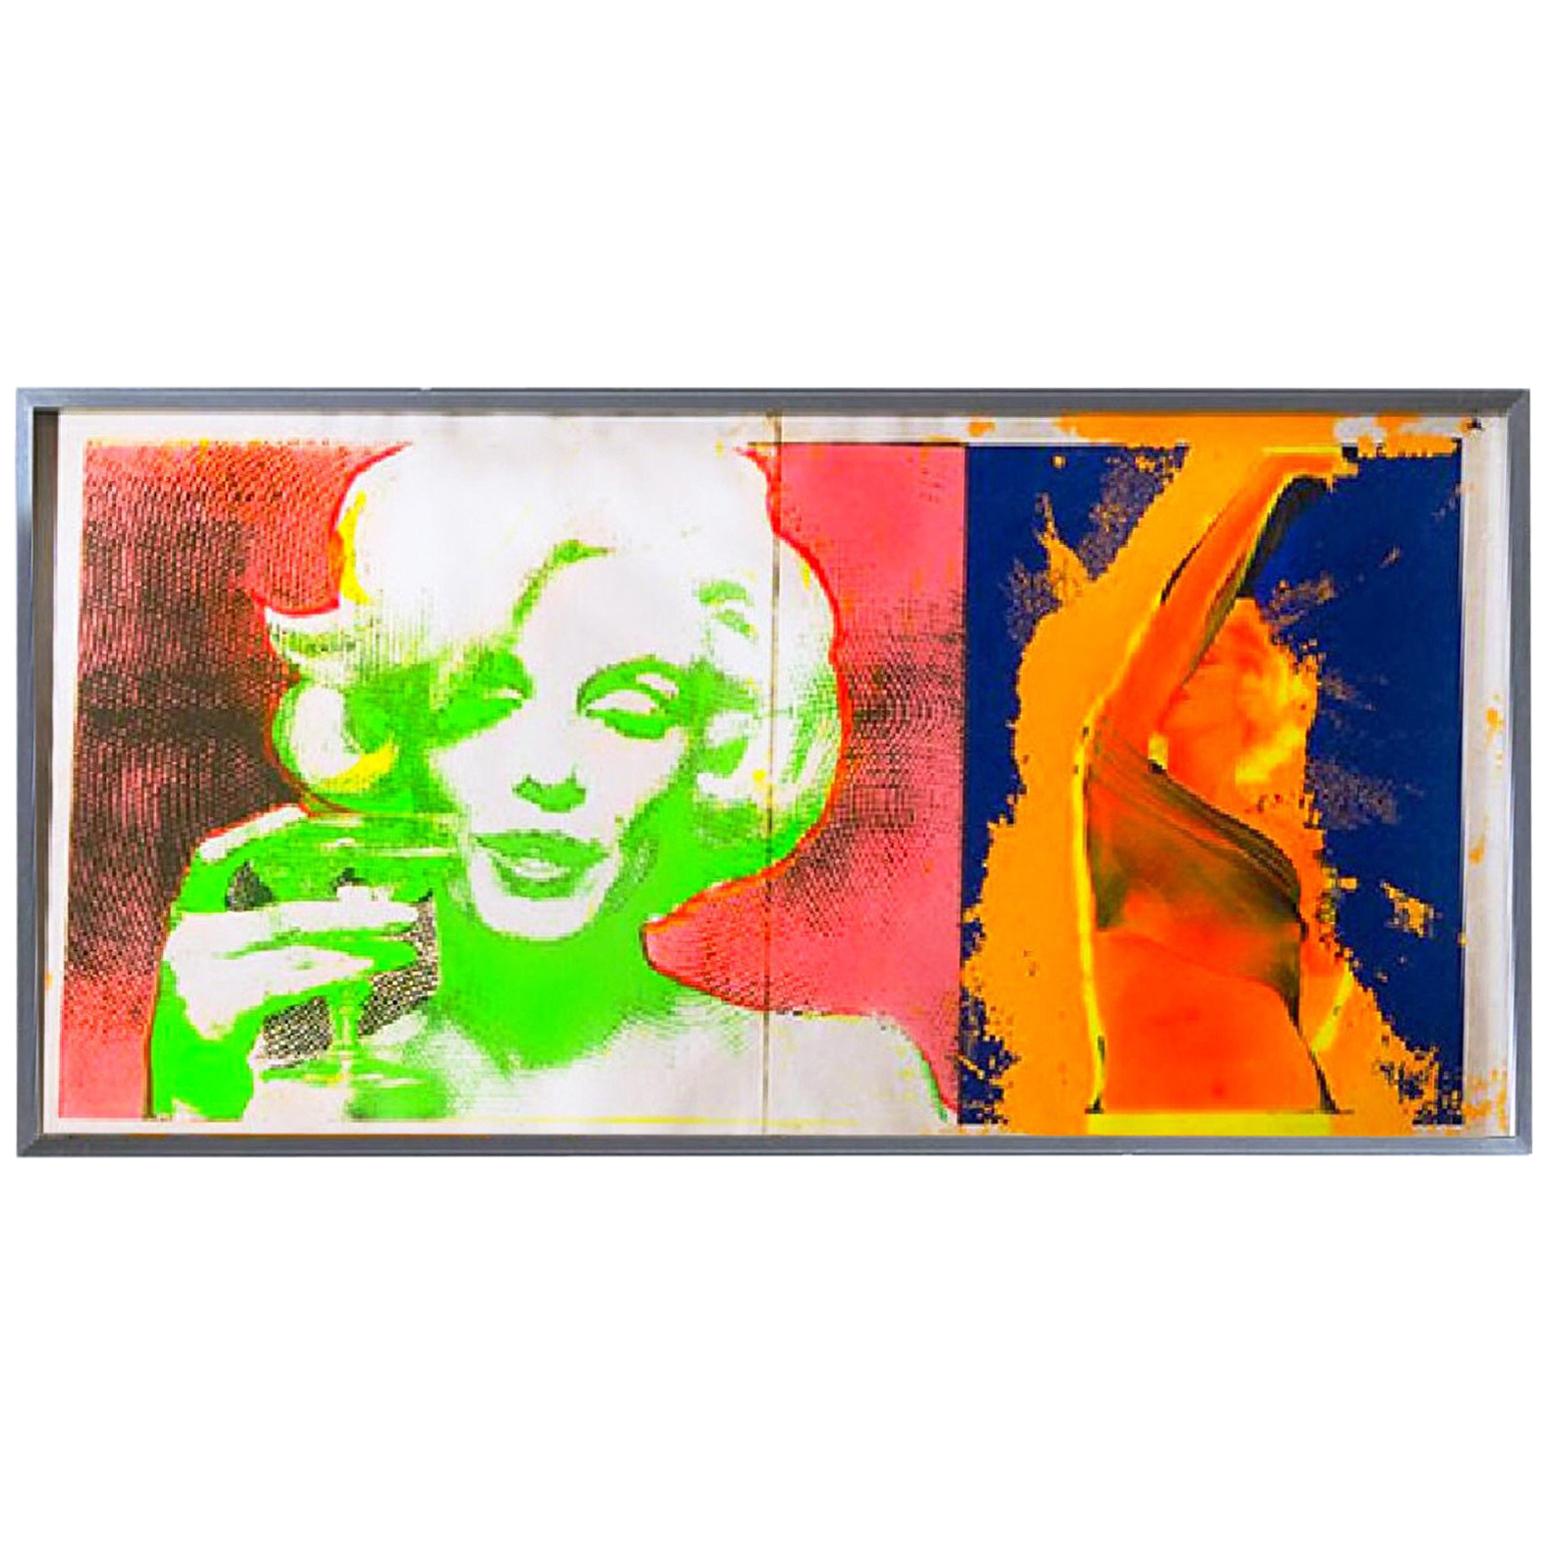  Marilyn Monroe Trip 1 & 2 Print by Bert Stern, 1968, Midcentury Pop Art, neon